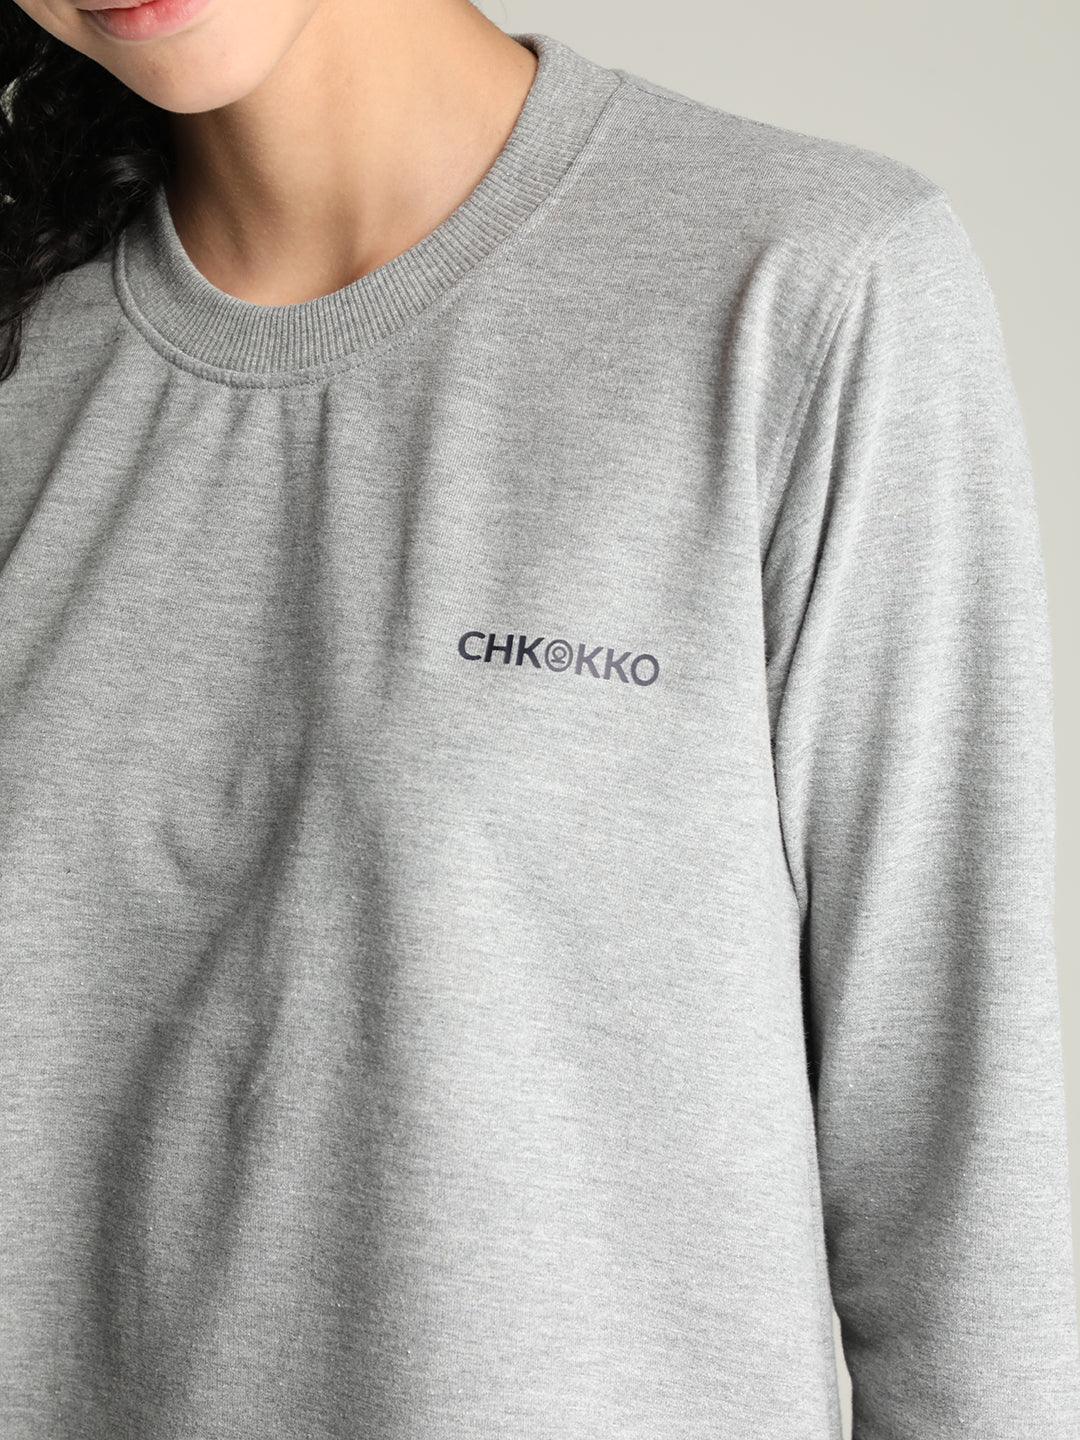 Women's Outdoor T Shirt | CHKOKKO - Chkokko